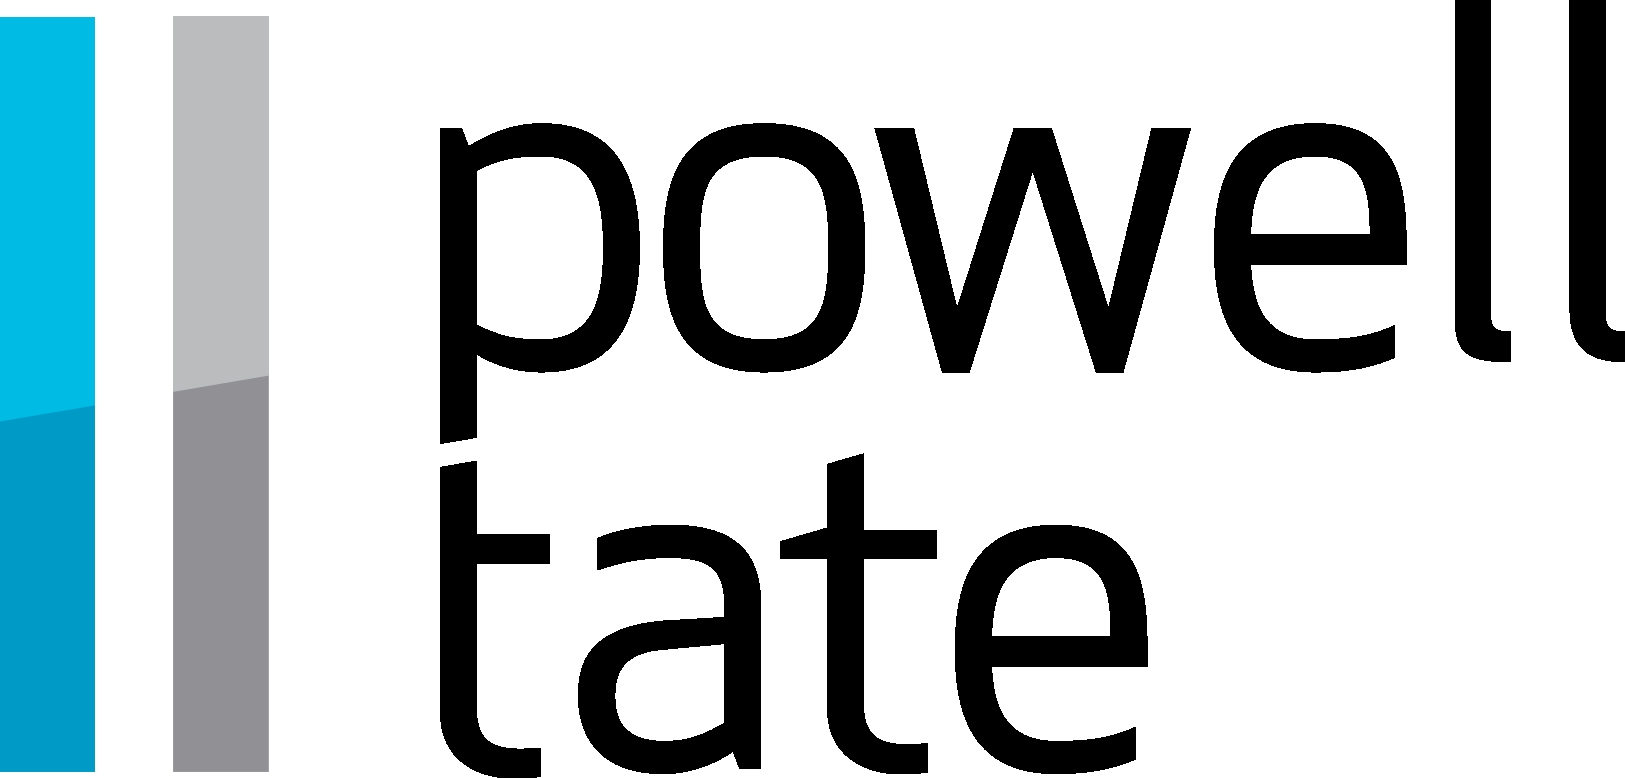 Powell Tate logo